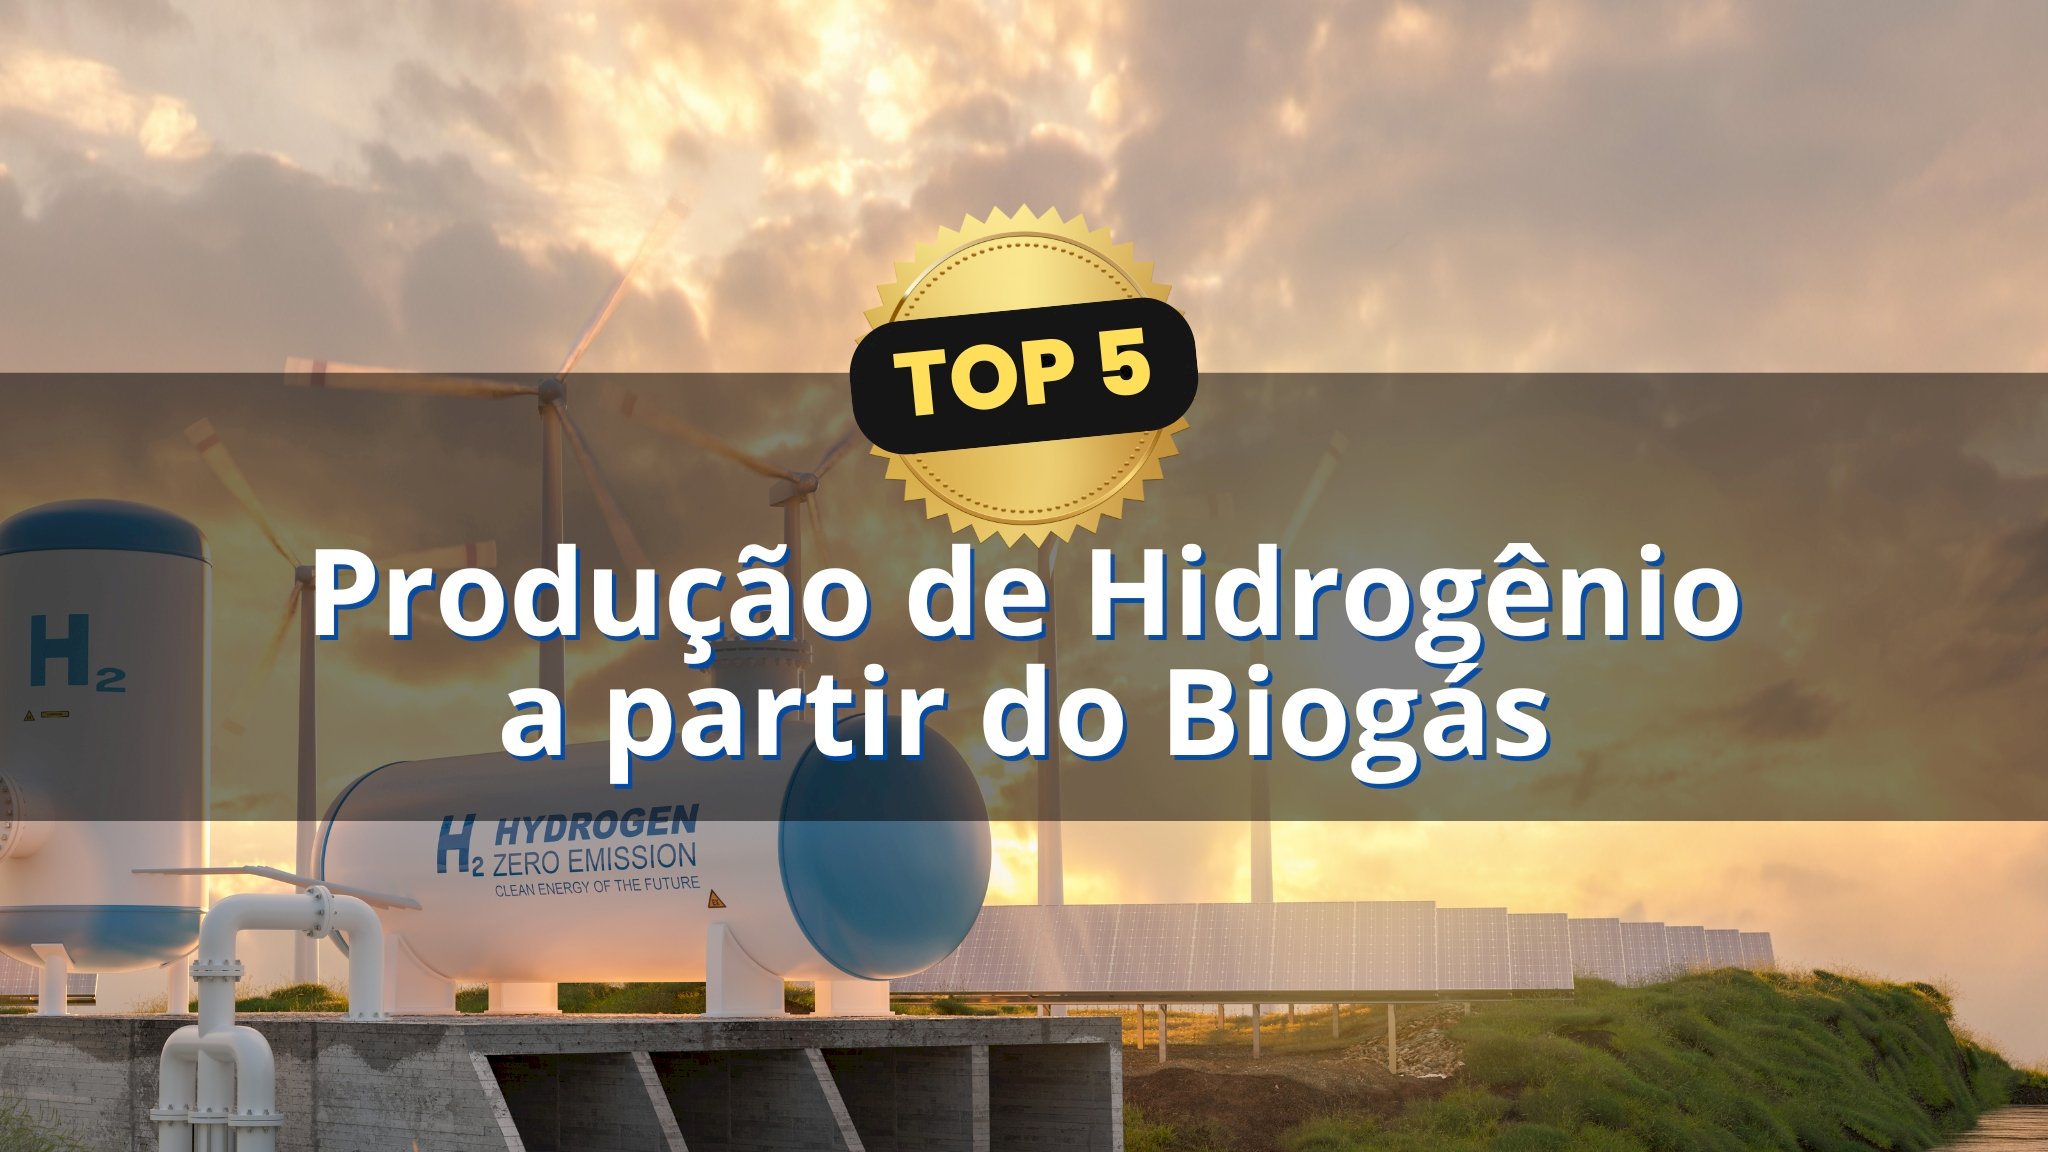 Top 5: Produção de Hidrogênio a partir do Biogás